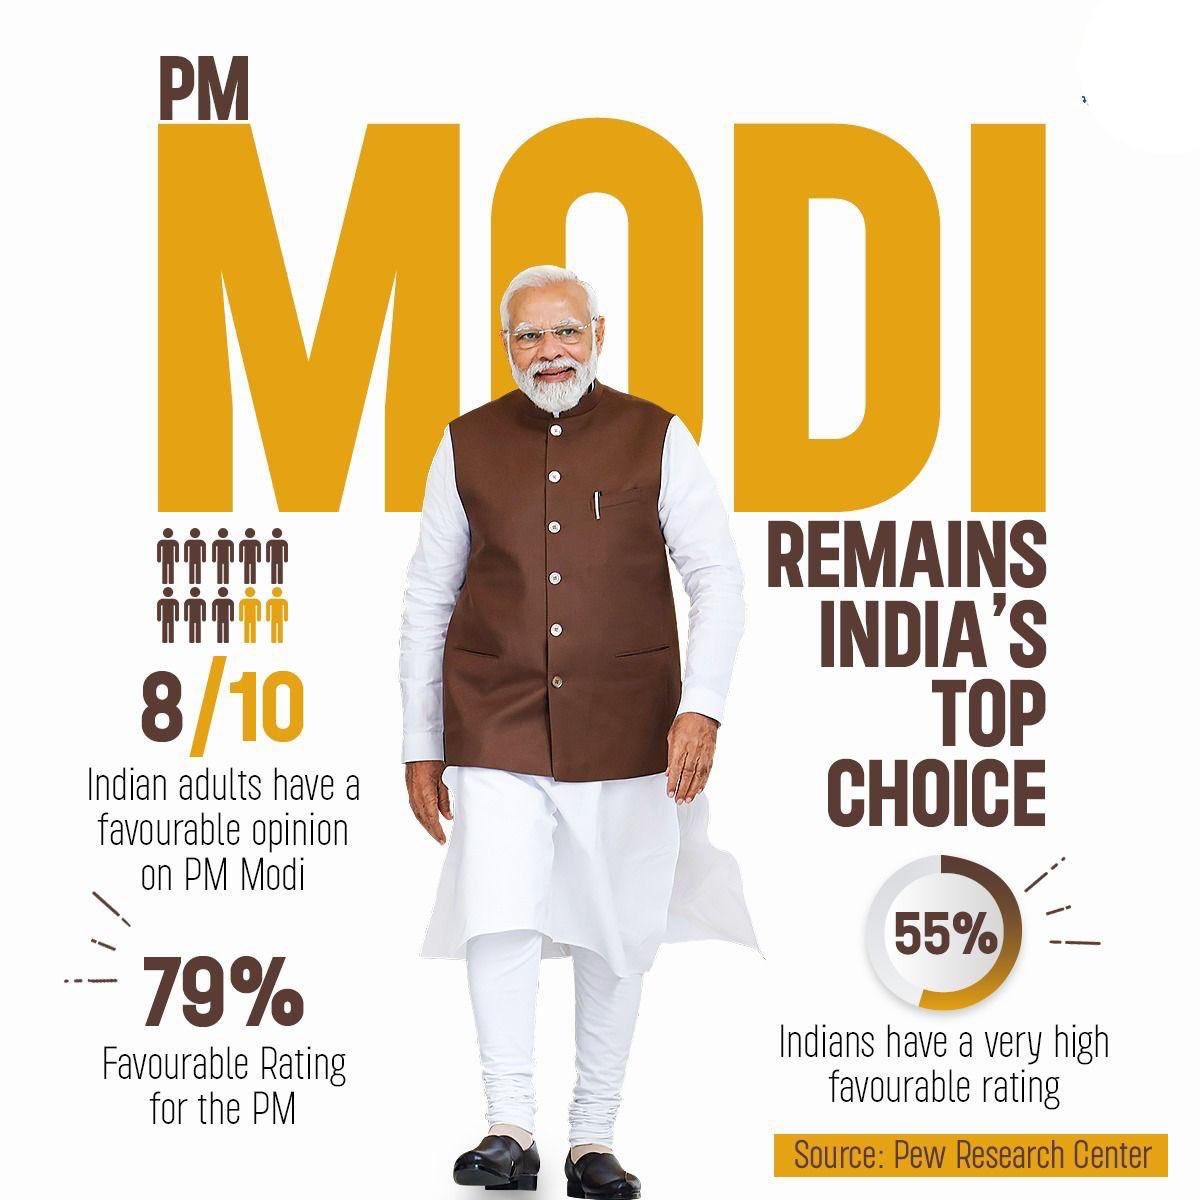 ये आदरणीय प्रधानमंत्री @narendramodi जी की कुशल नीतियों का ही परिणाम है कि देश में 79% लोगों की पहली पसंद मोदी जी बने हुए हैं। 

प्यू रिसर्च सेंटर का एक-एक दावा मजबूत भारत की तस्वीर दिखा रहा है।
#PewResearchCenter
#ModiHaiToMumkinHai